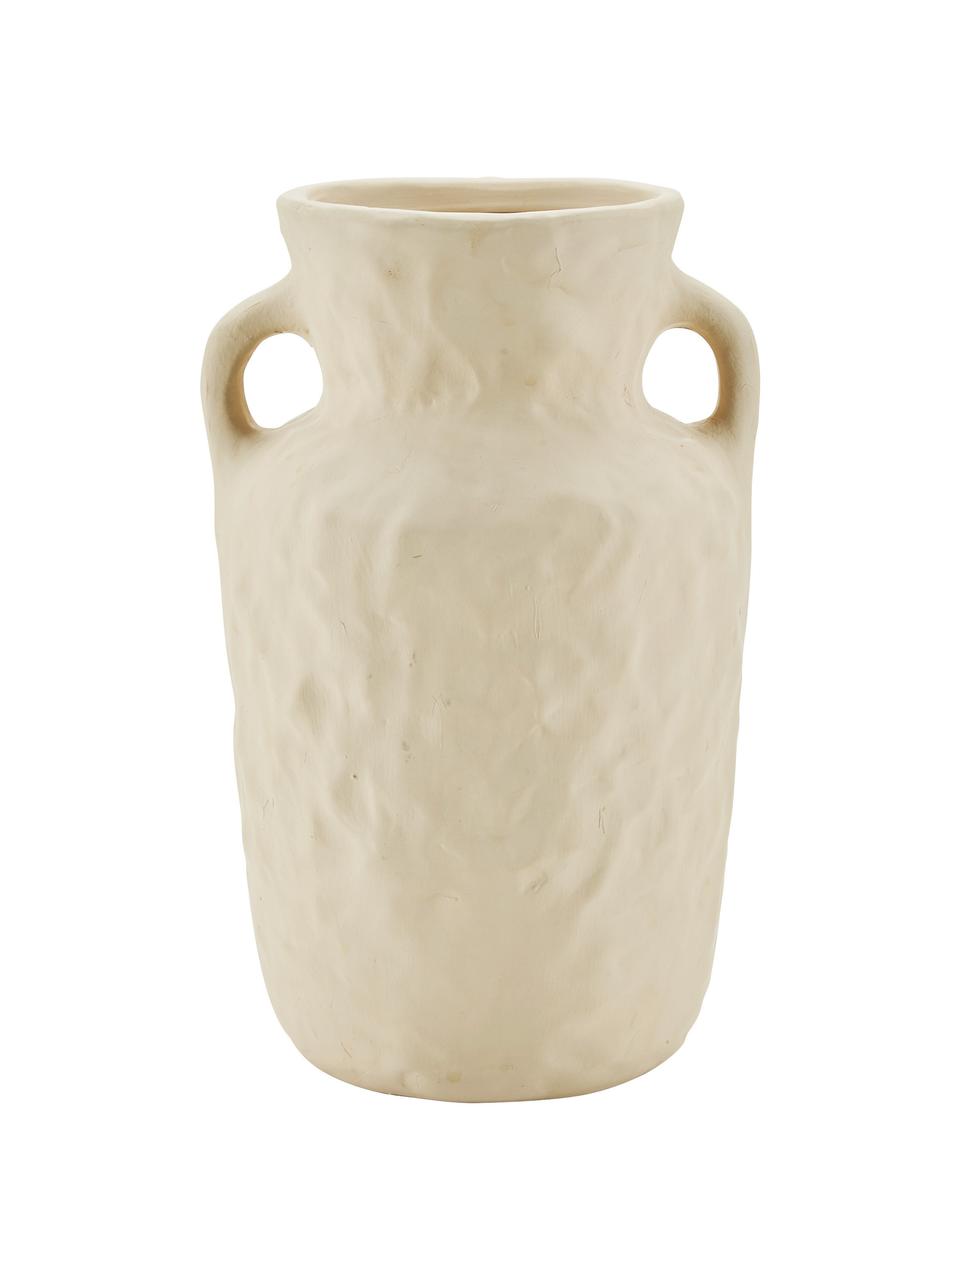 Porzellan-Vase Squared in Beige, Porzellan, Beige, B 15 x H 24 cm